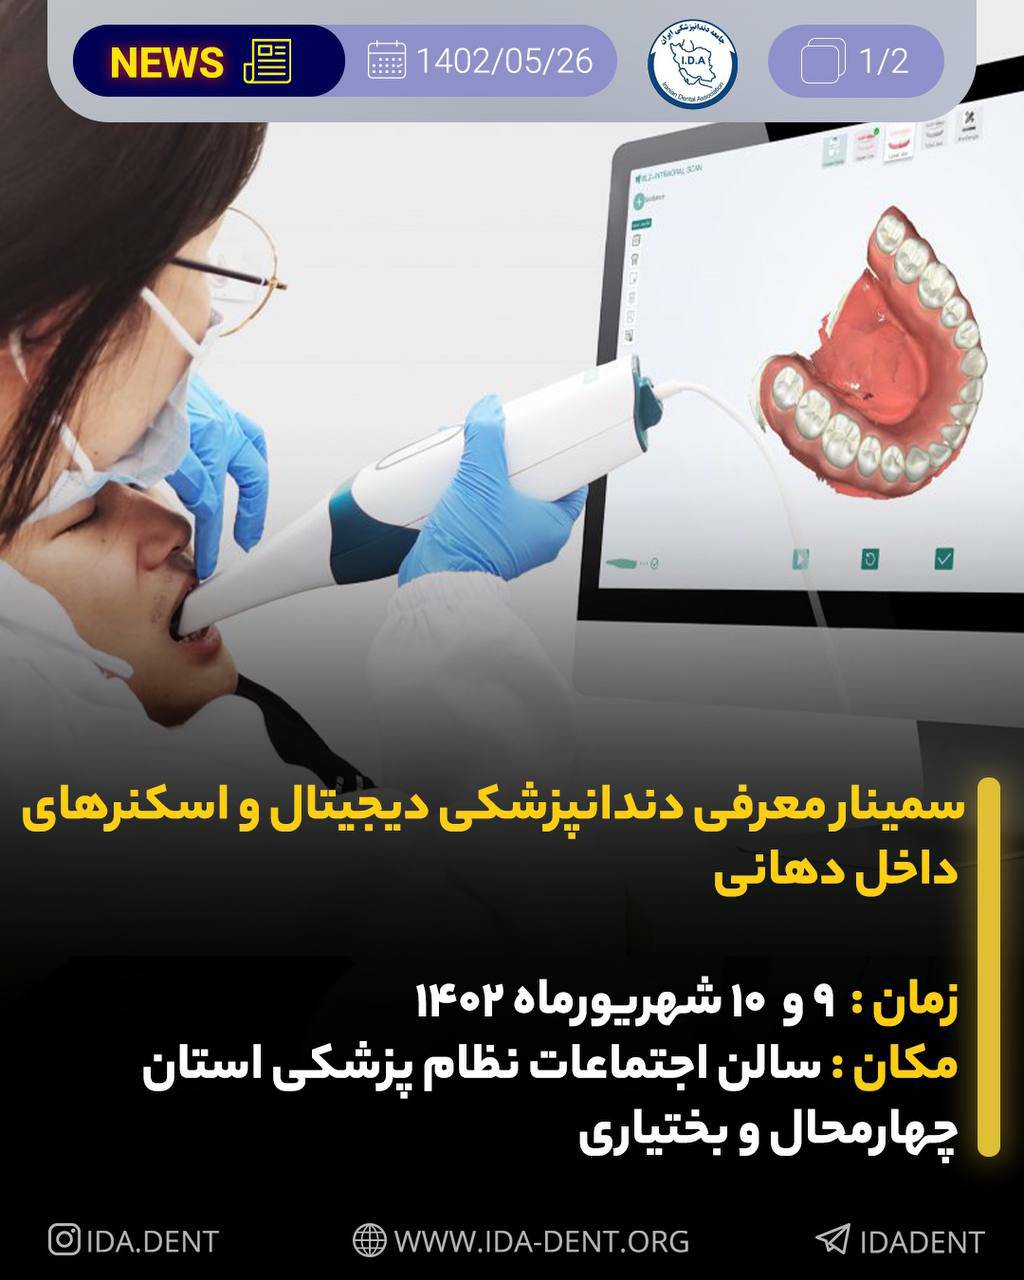 سمینار معرفی دندانپزشکی دیجیتال و اسکنرهای داخل دهانی